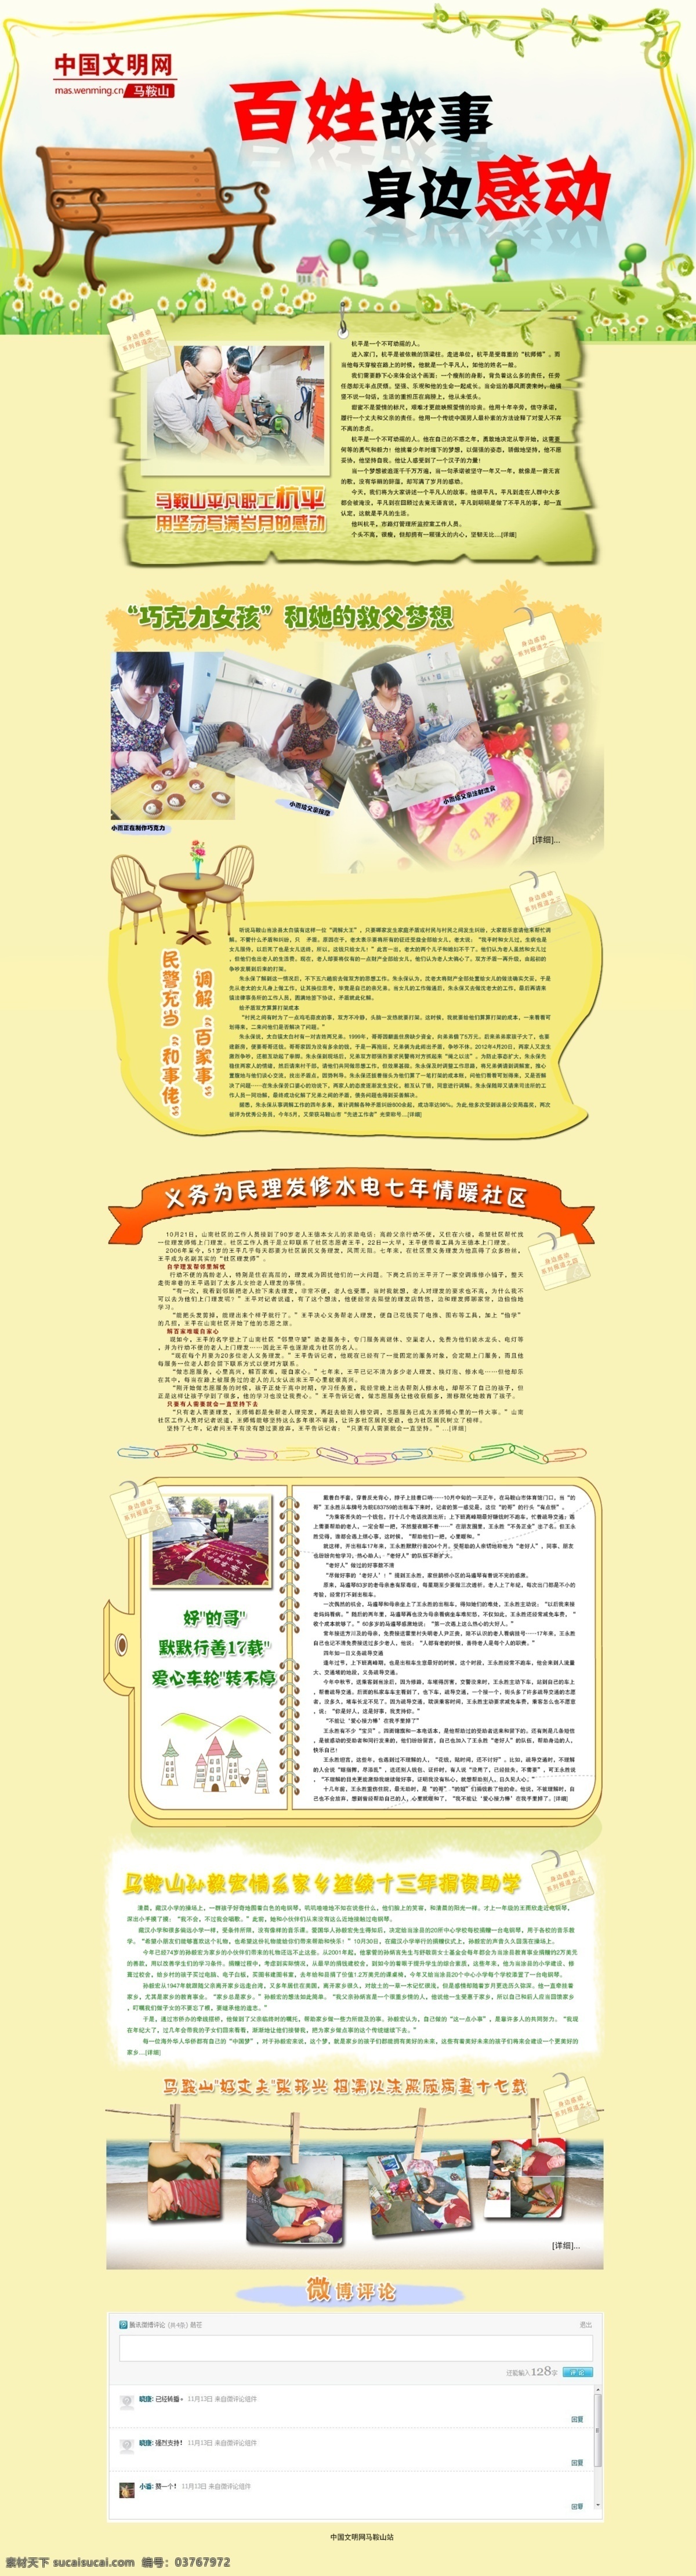 百姓 网页 网页模板 温暖 效果图 源文件 中文模板 专题 模板下载 p s 网页素材